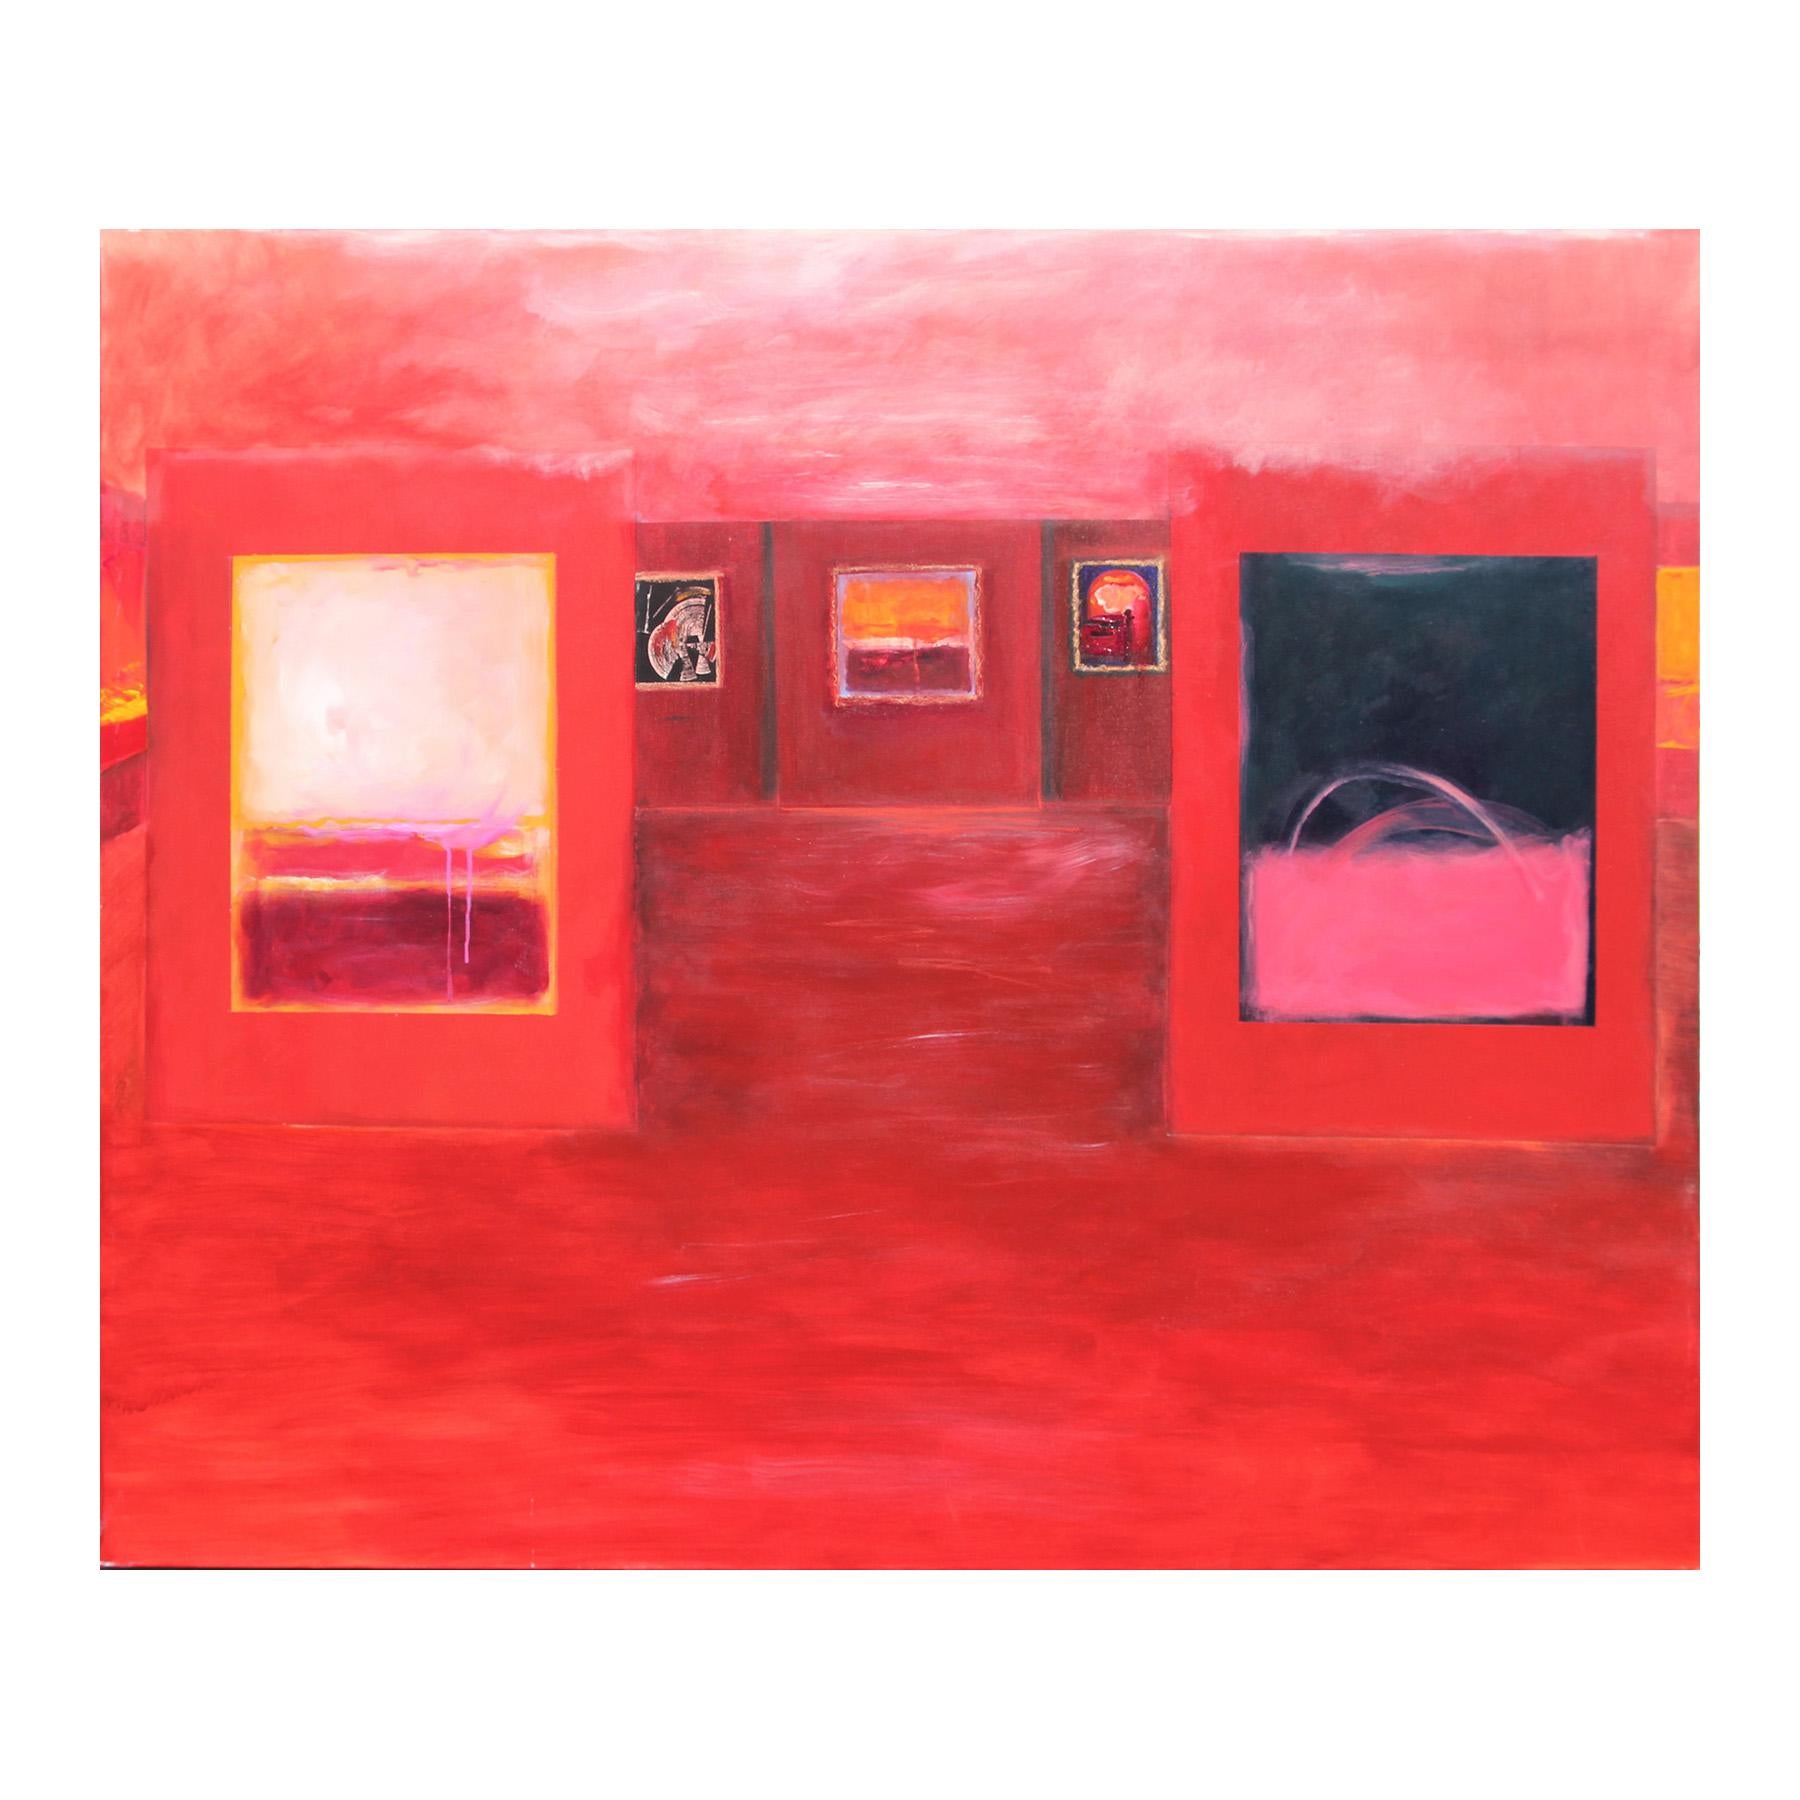 Peinture d'une scène de galerie expressionniste abstraite aux tons rouges